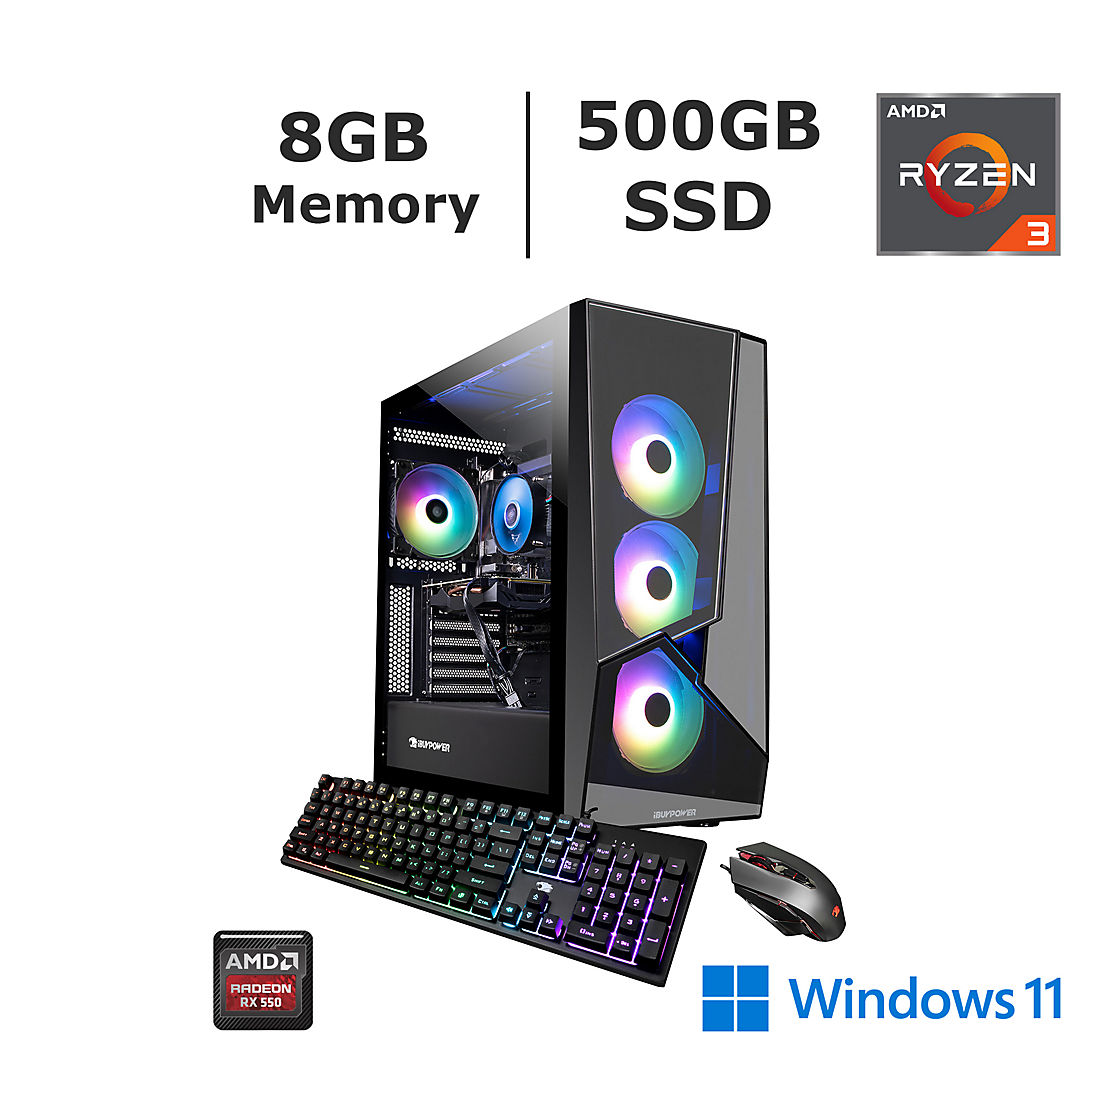 iBUYPOWER SlateMR295a Gaming PC, Ryzen 3 3100, RX550 2GB, 8GB RAM, 500 GB  SSD